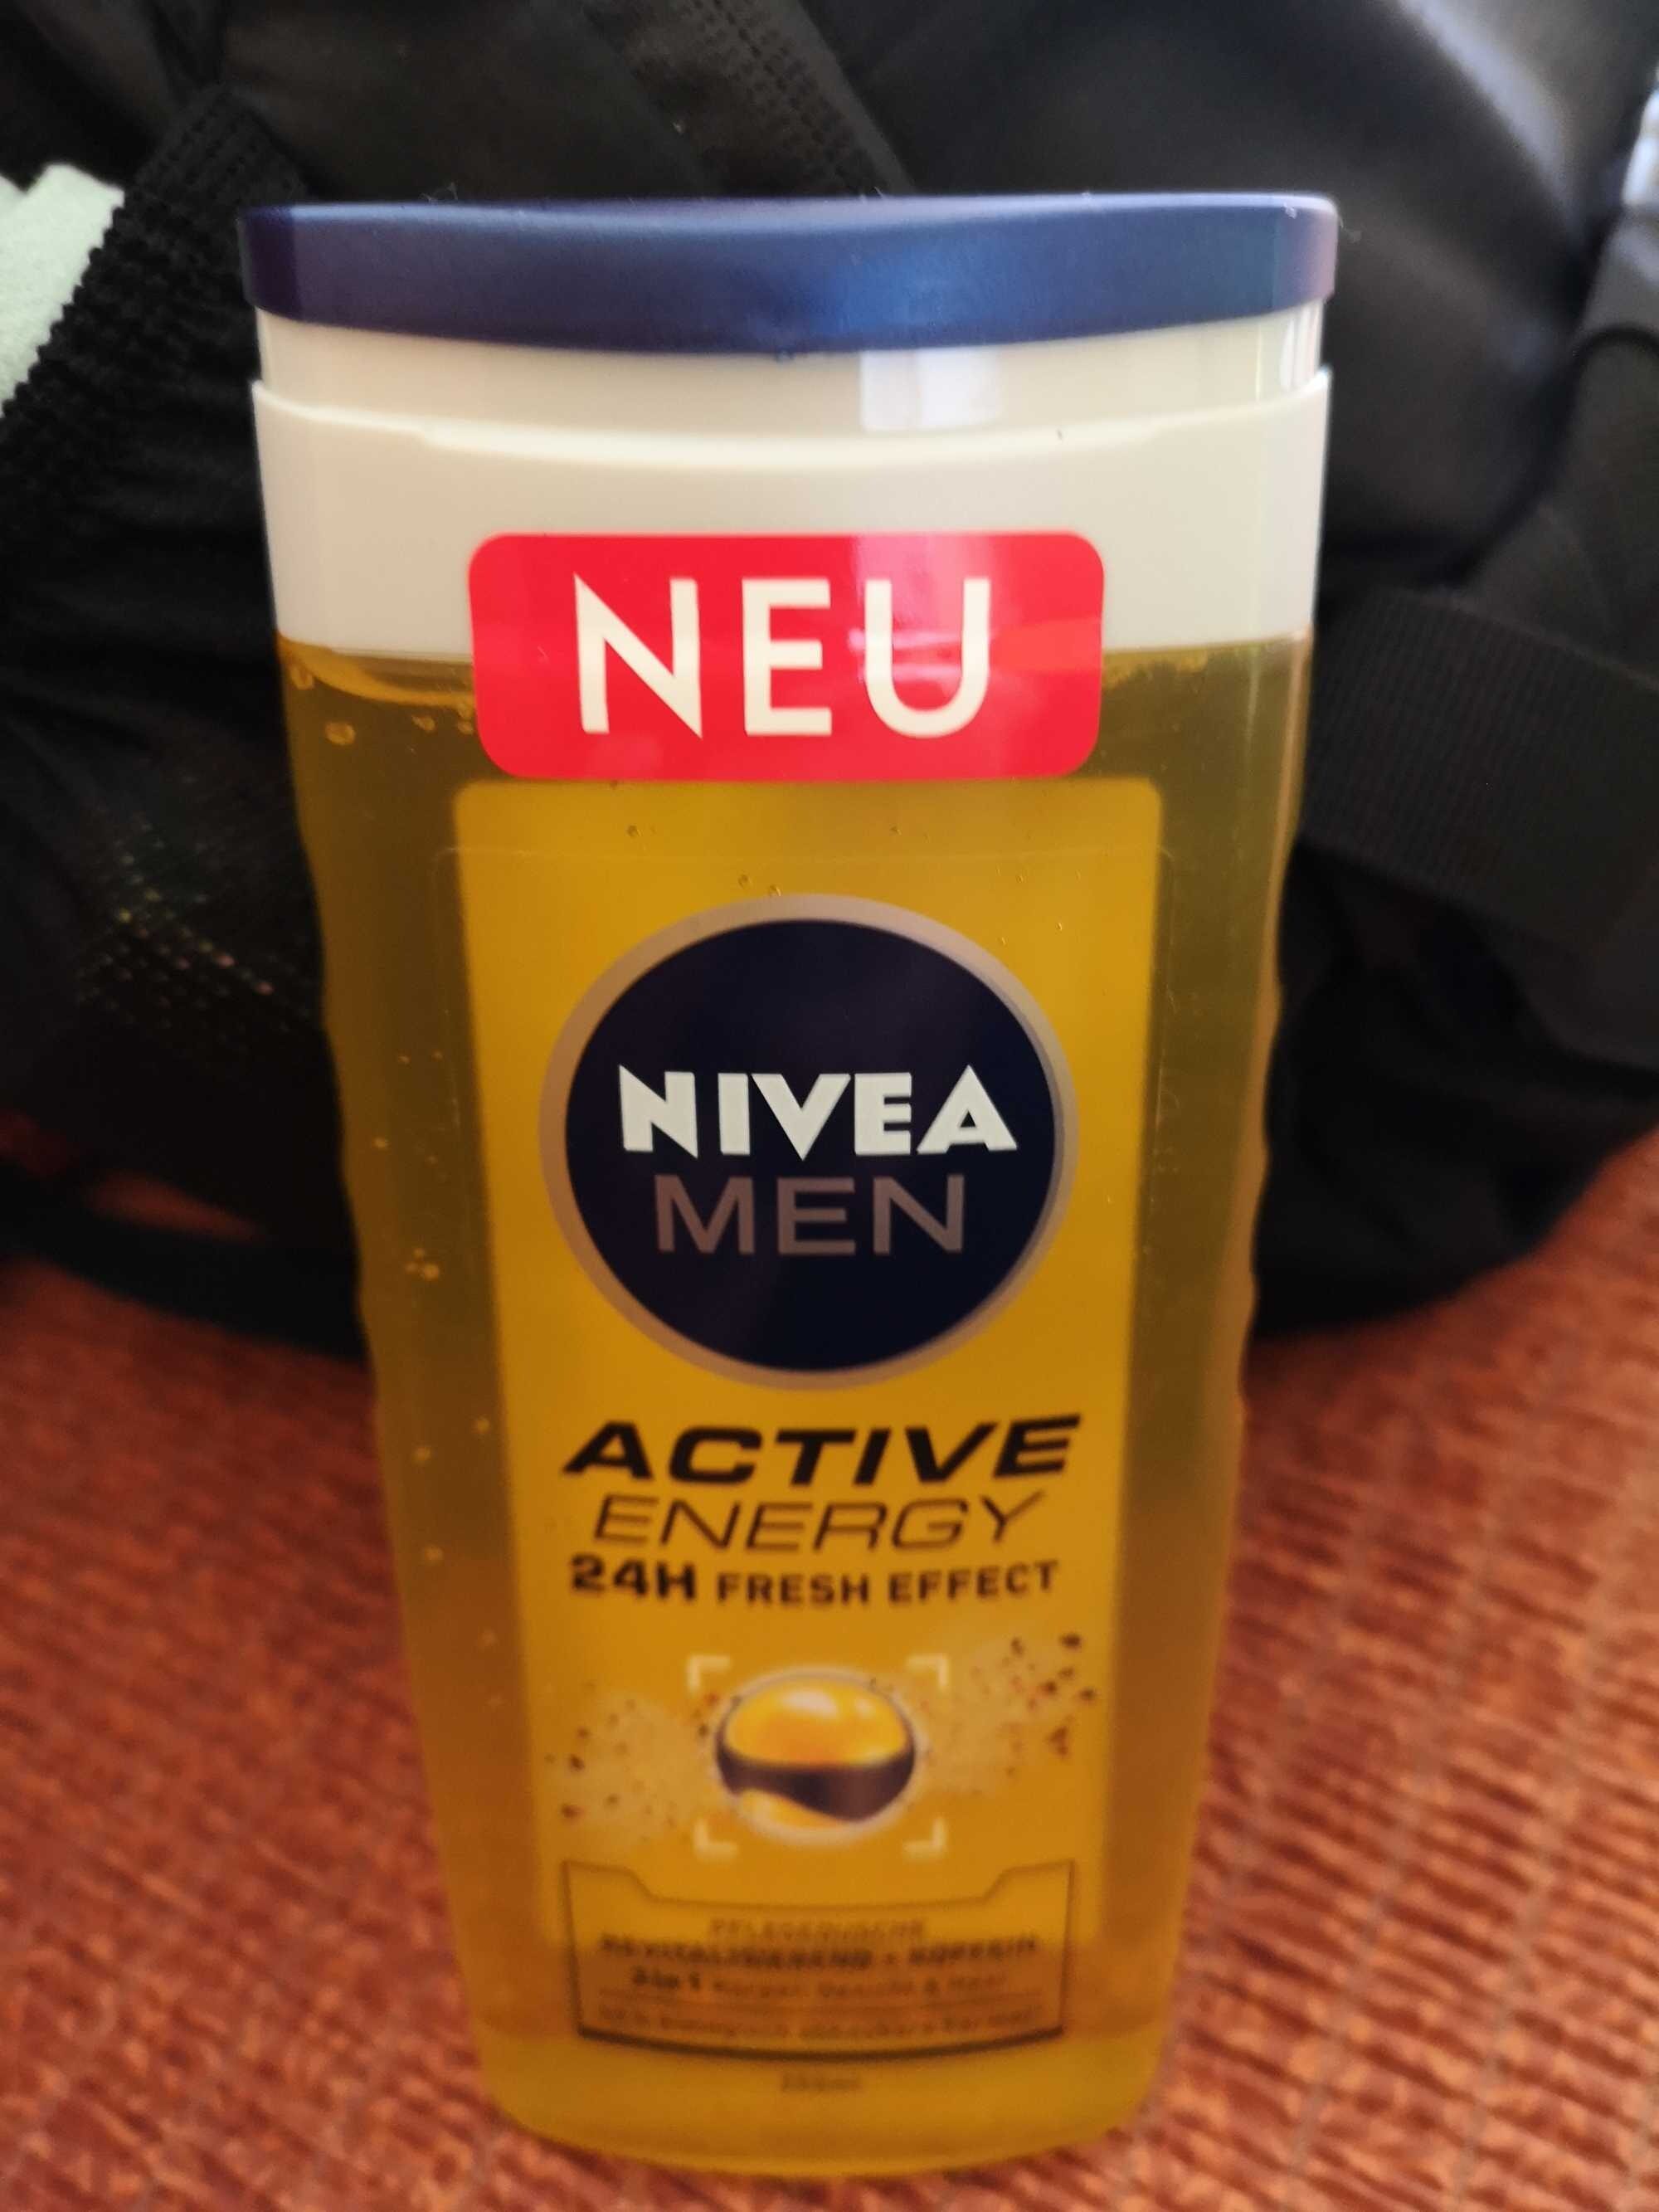 Nivea Men Active Energy 24h Fresh Effect - Produkt - de